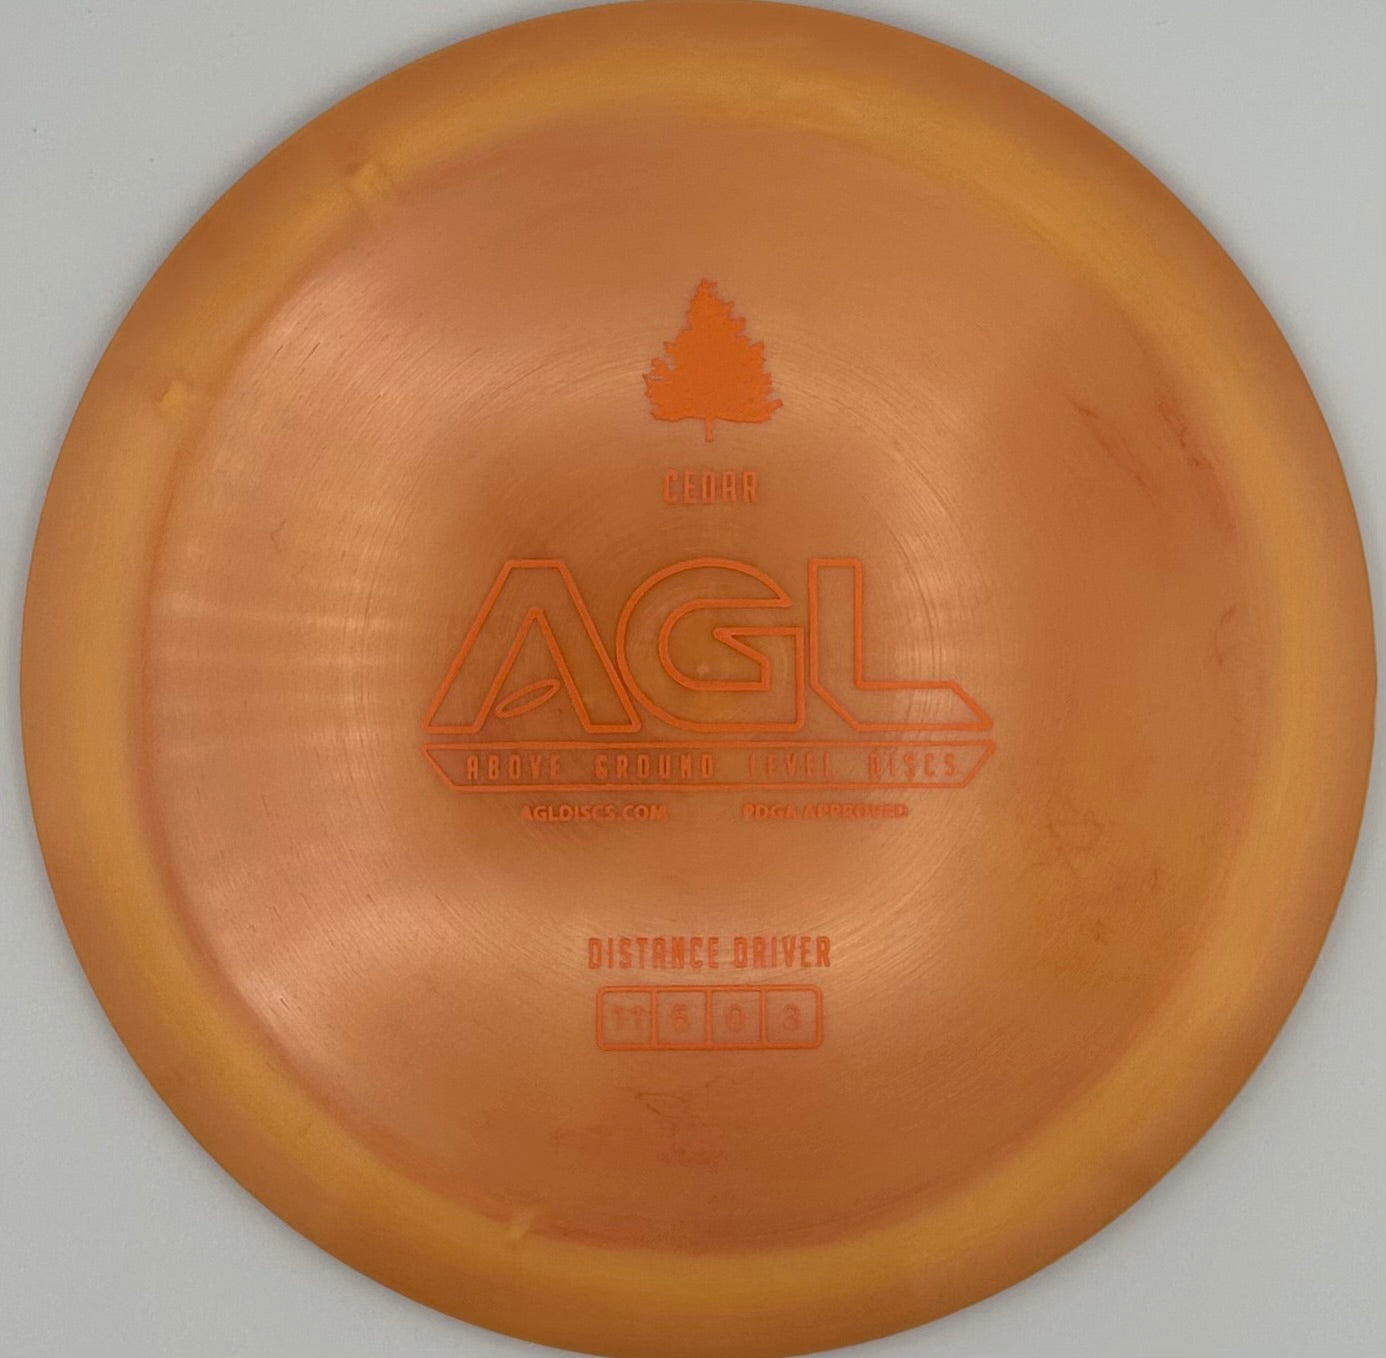 AGL Discs - Orange Sunset Alpine Cedar (Stamped by Gateway)